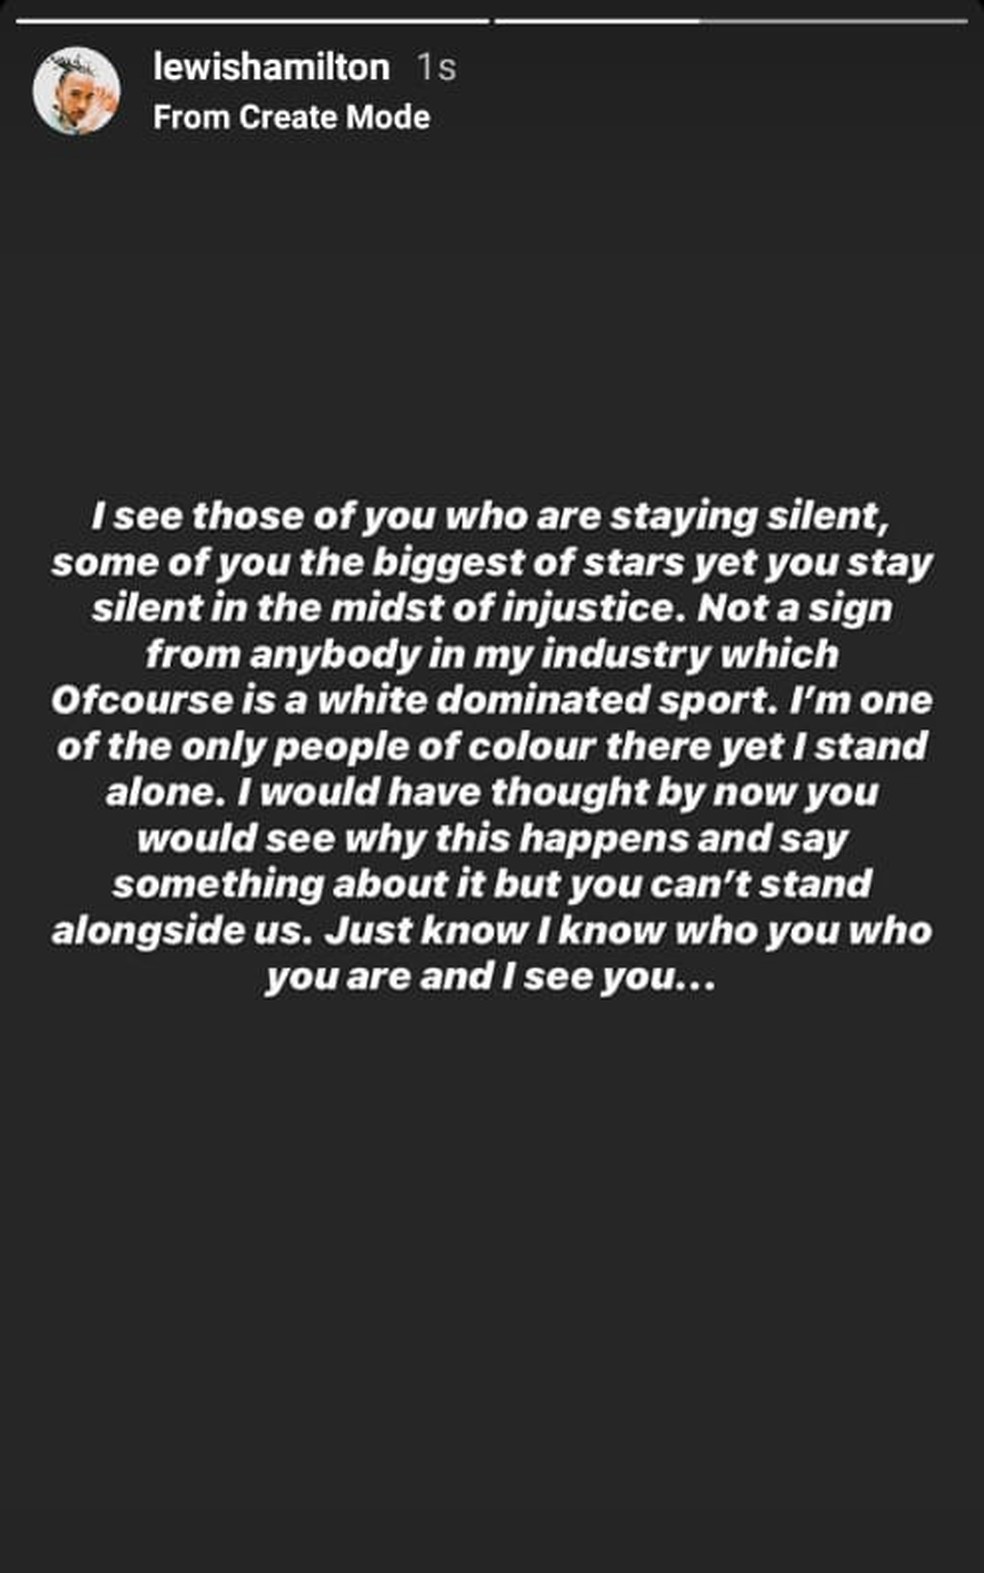 Postagem de Hamilton no Instagram sobre silêncio dos colegas — Foto: Reprodução